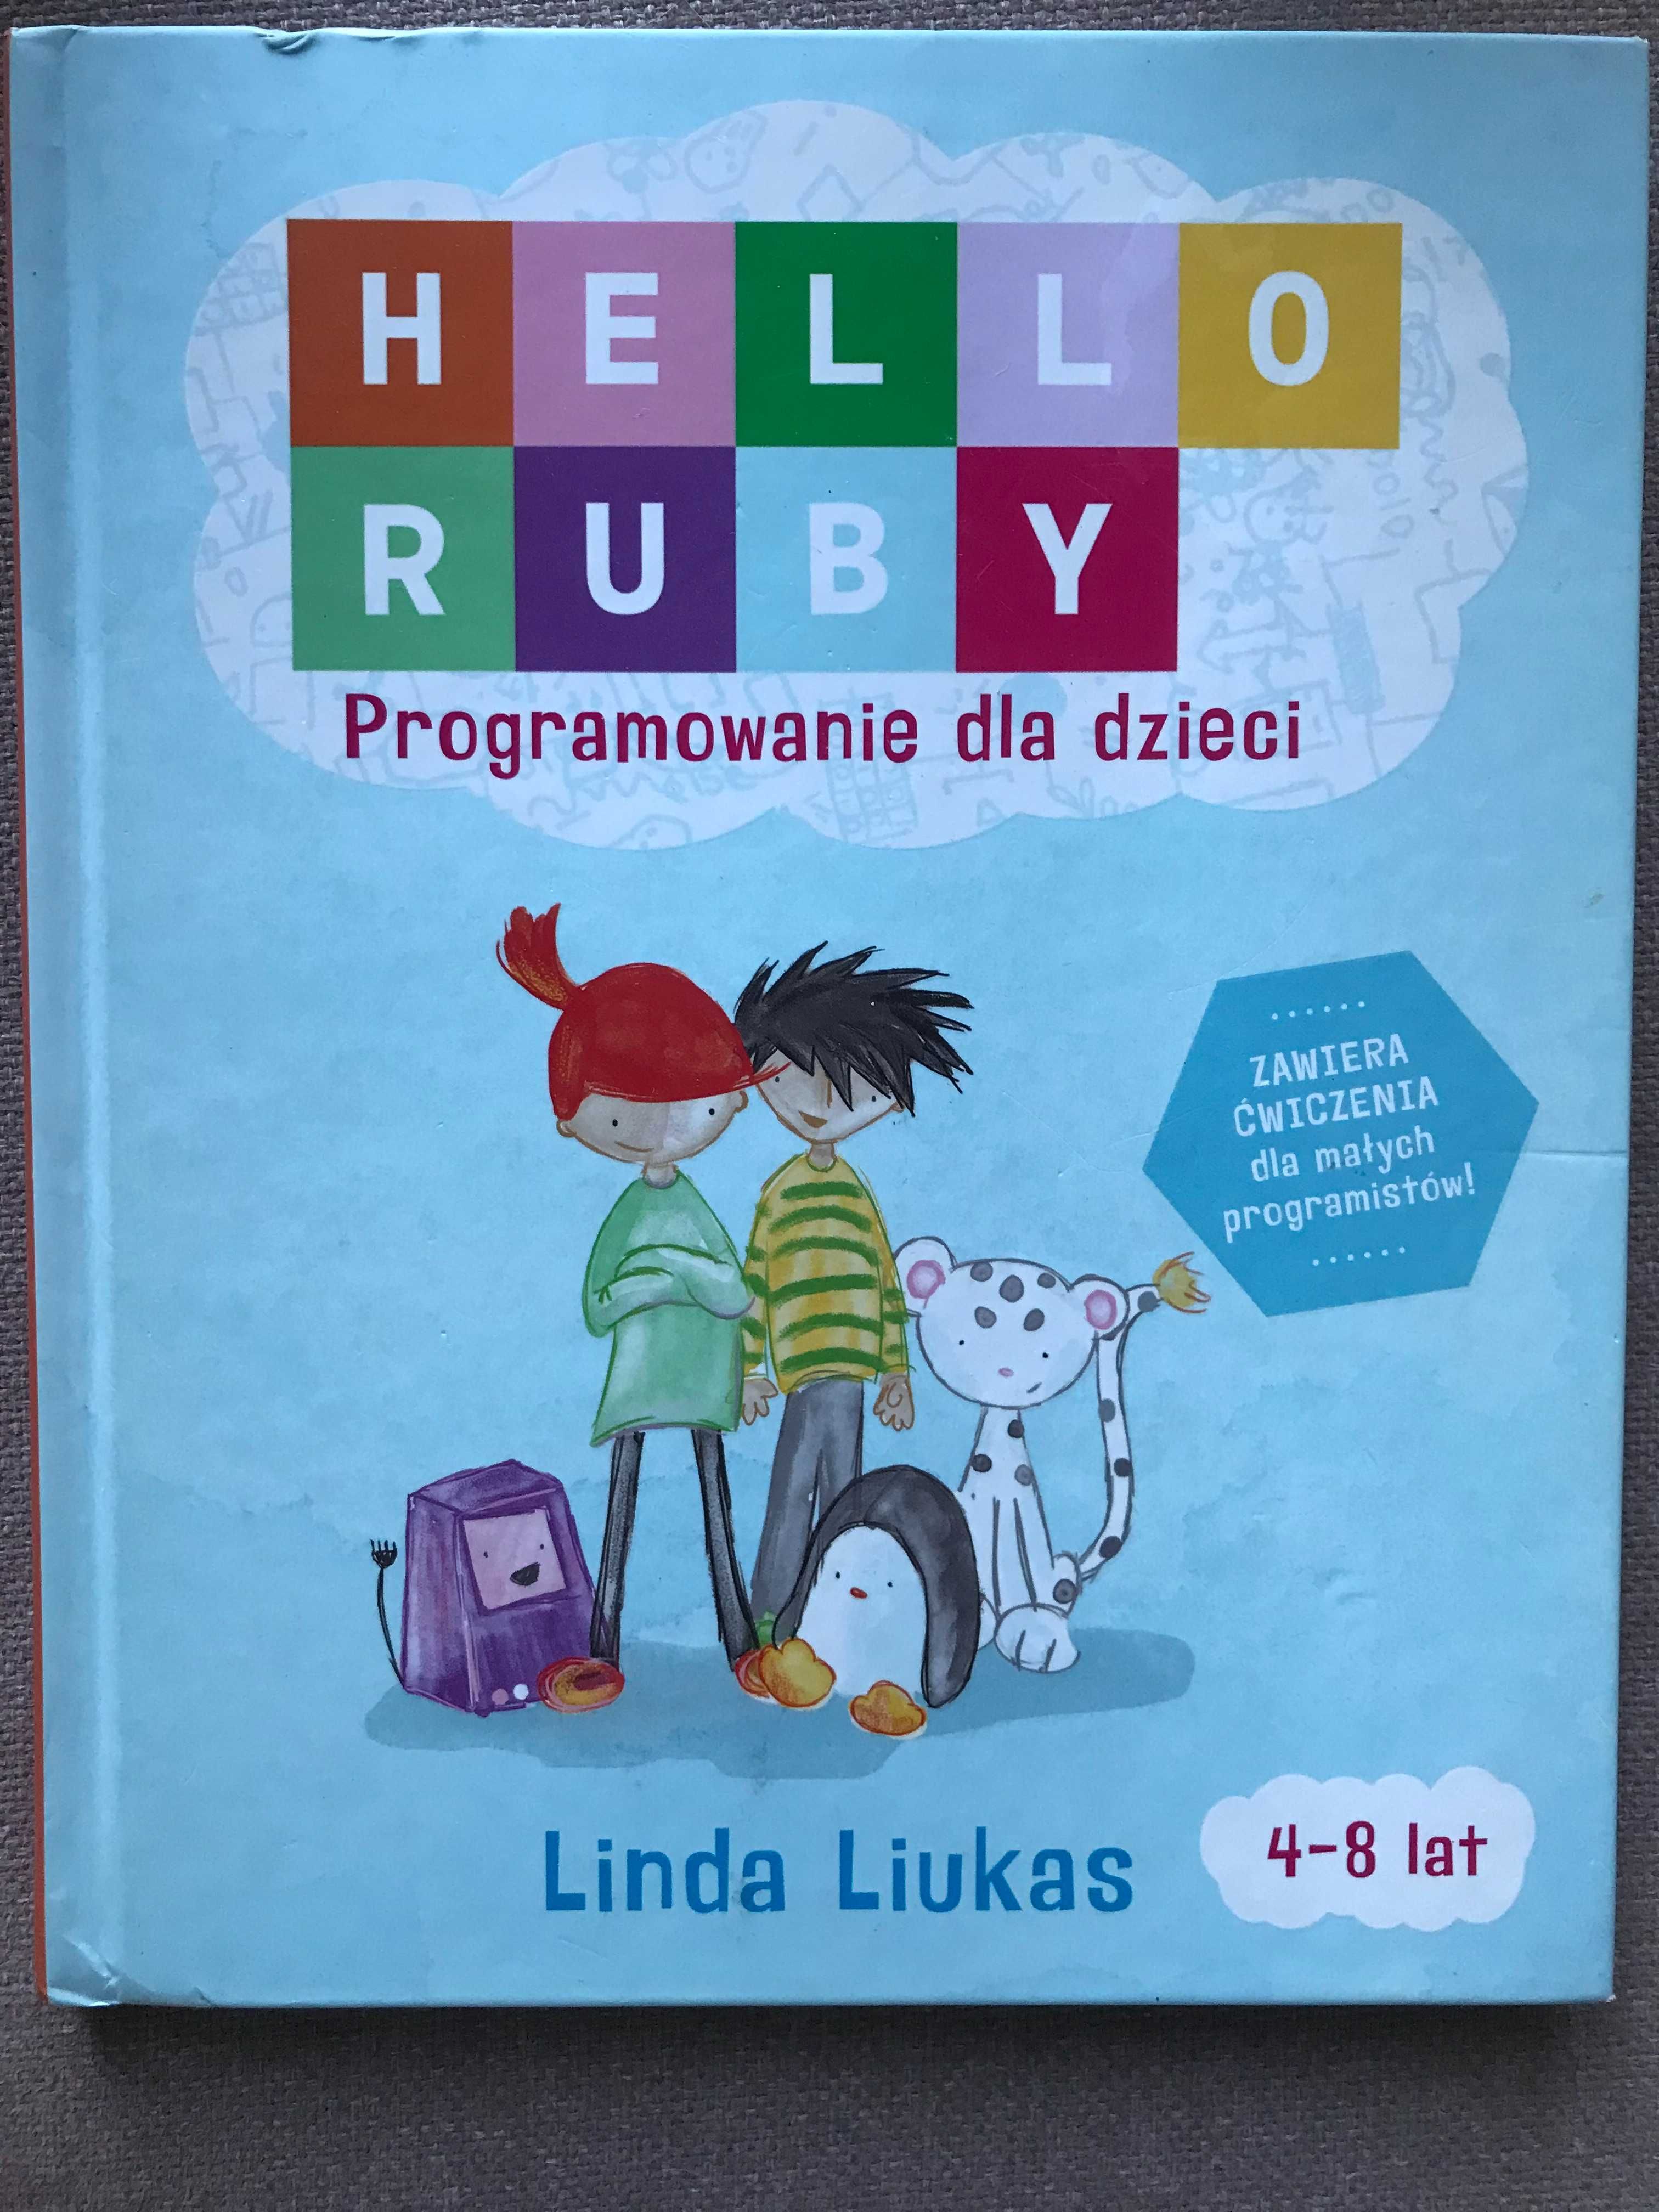 Hello Ruby - nauka programowania dla dzieci